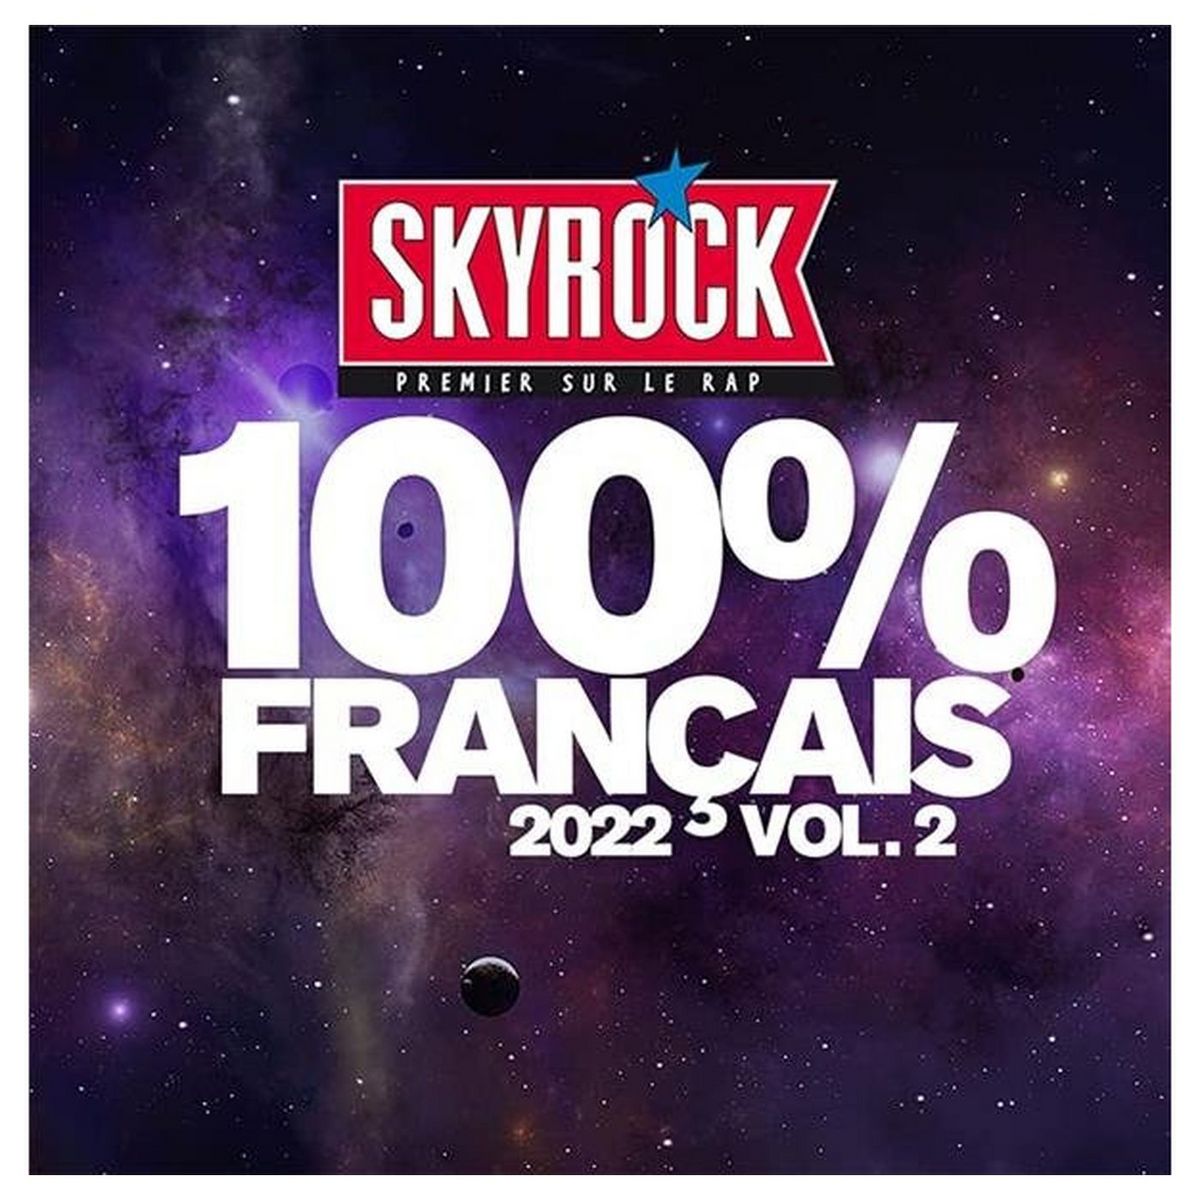 Skyrock - 100% Français 2022 Vol. 2 CD